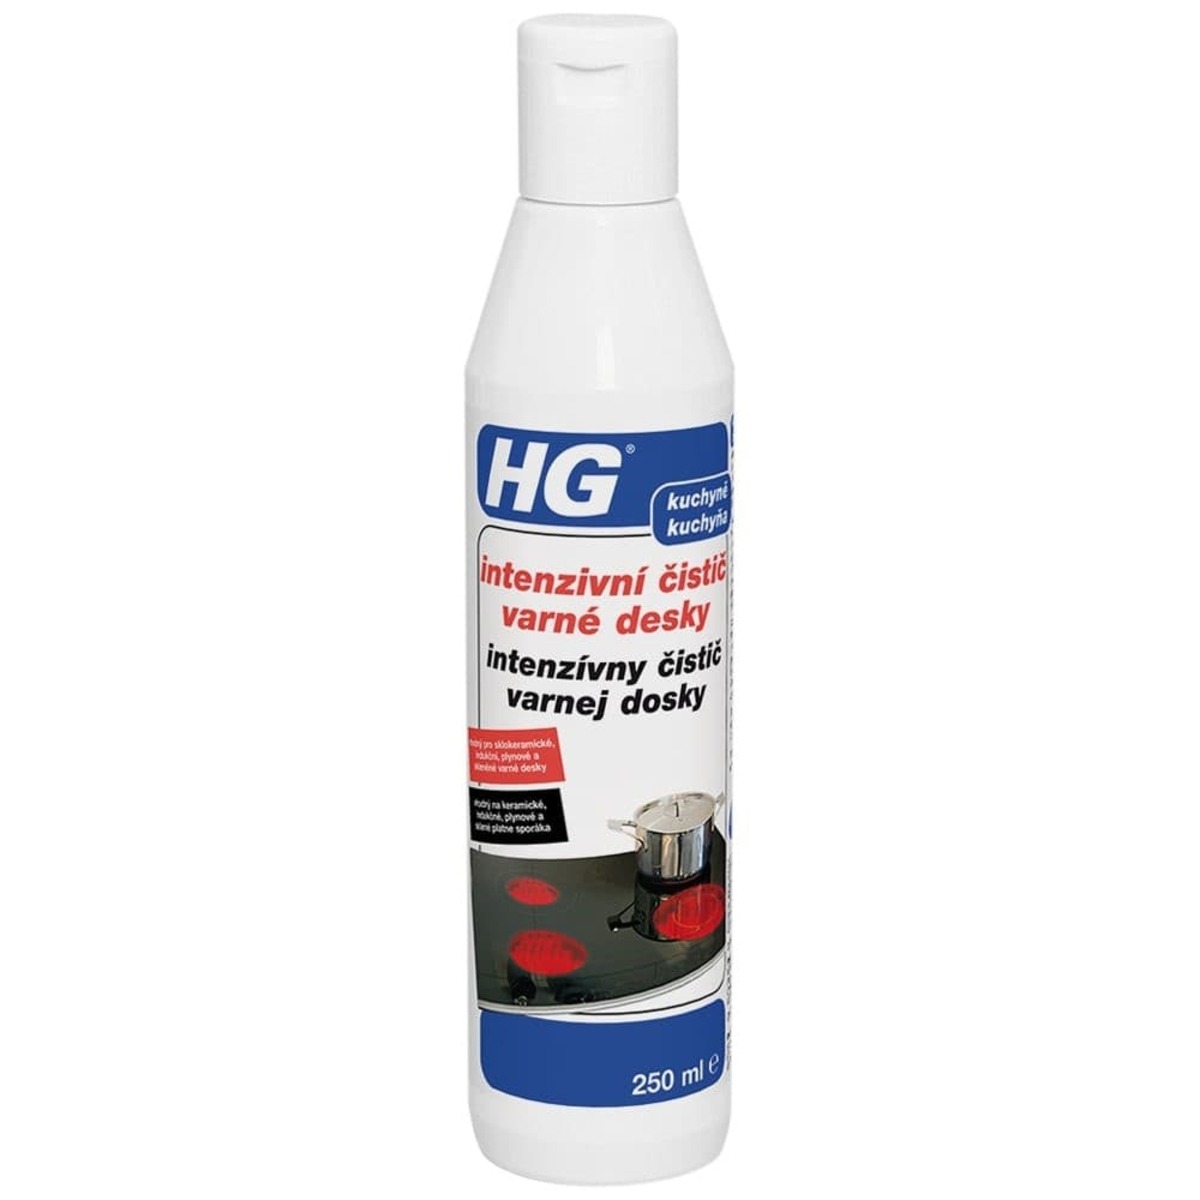 HG intenzivní čistič varné desky HGICKD HG